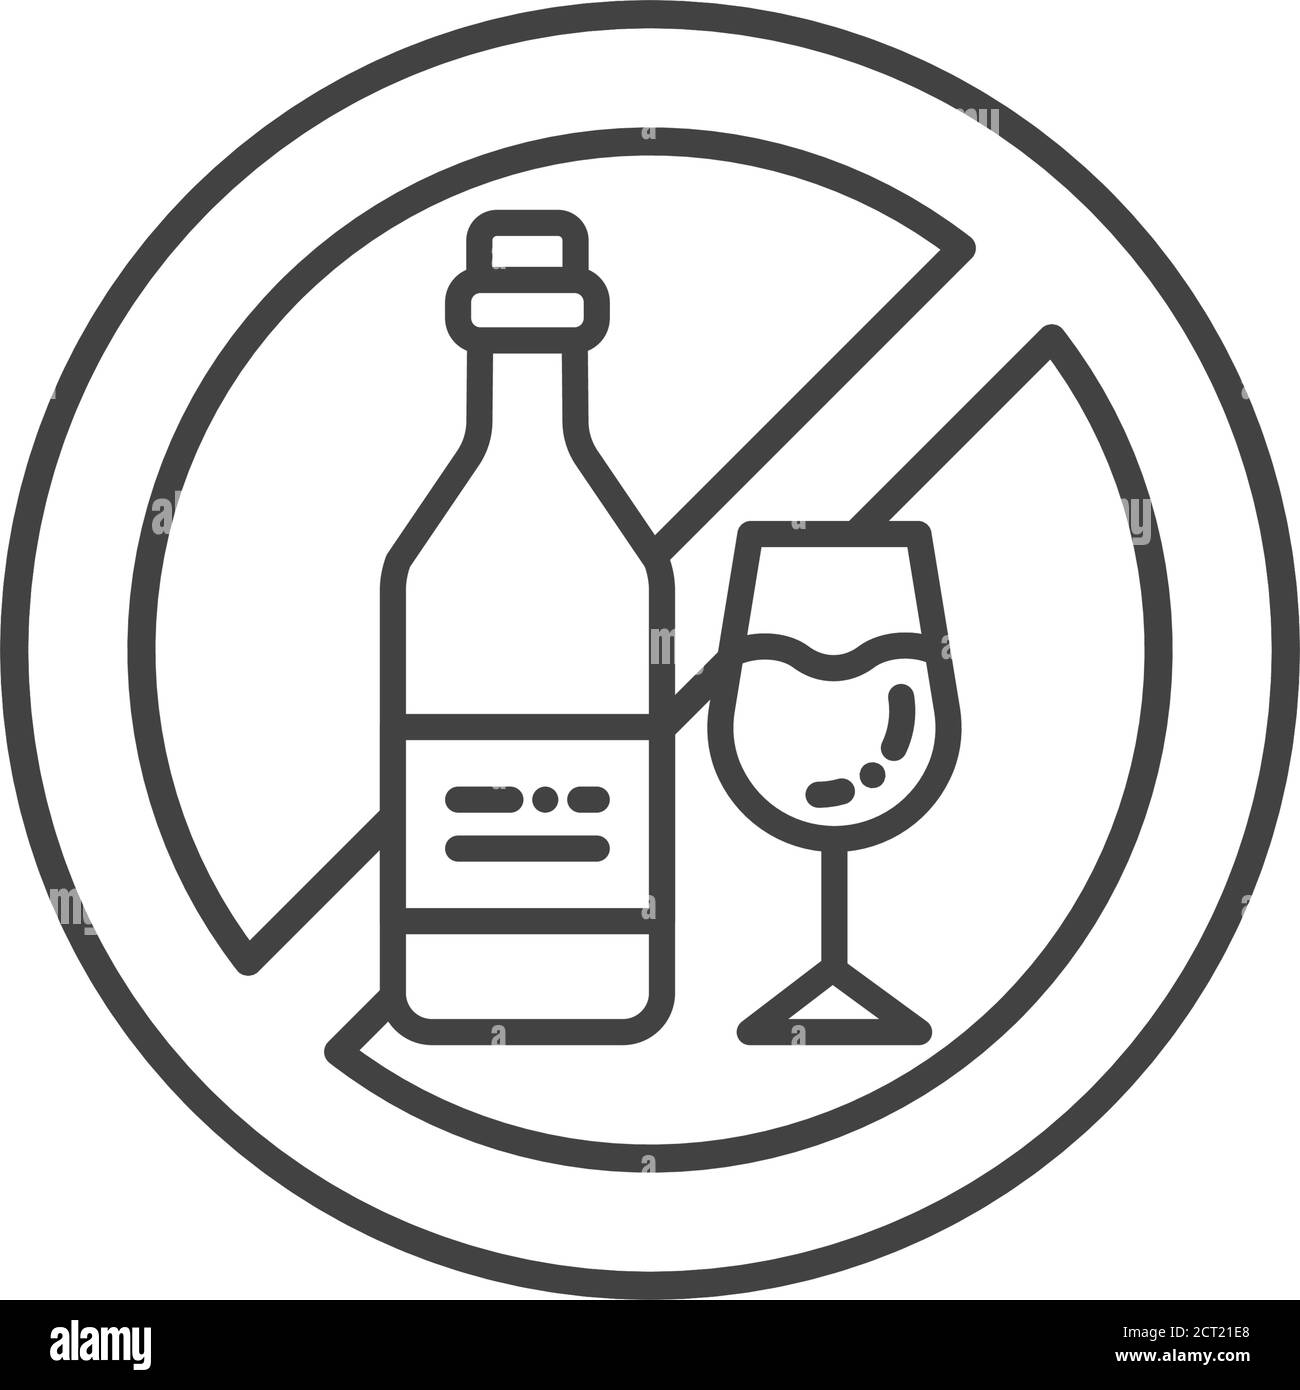 Alcoholismo Imágenes de stock en blanco y negro - Página 2 - Alamy